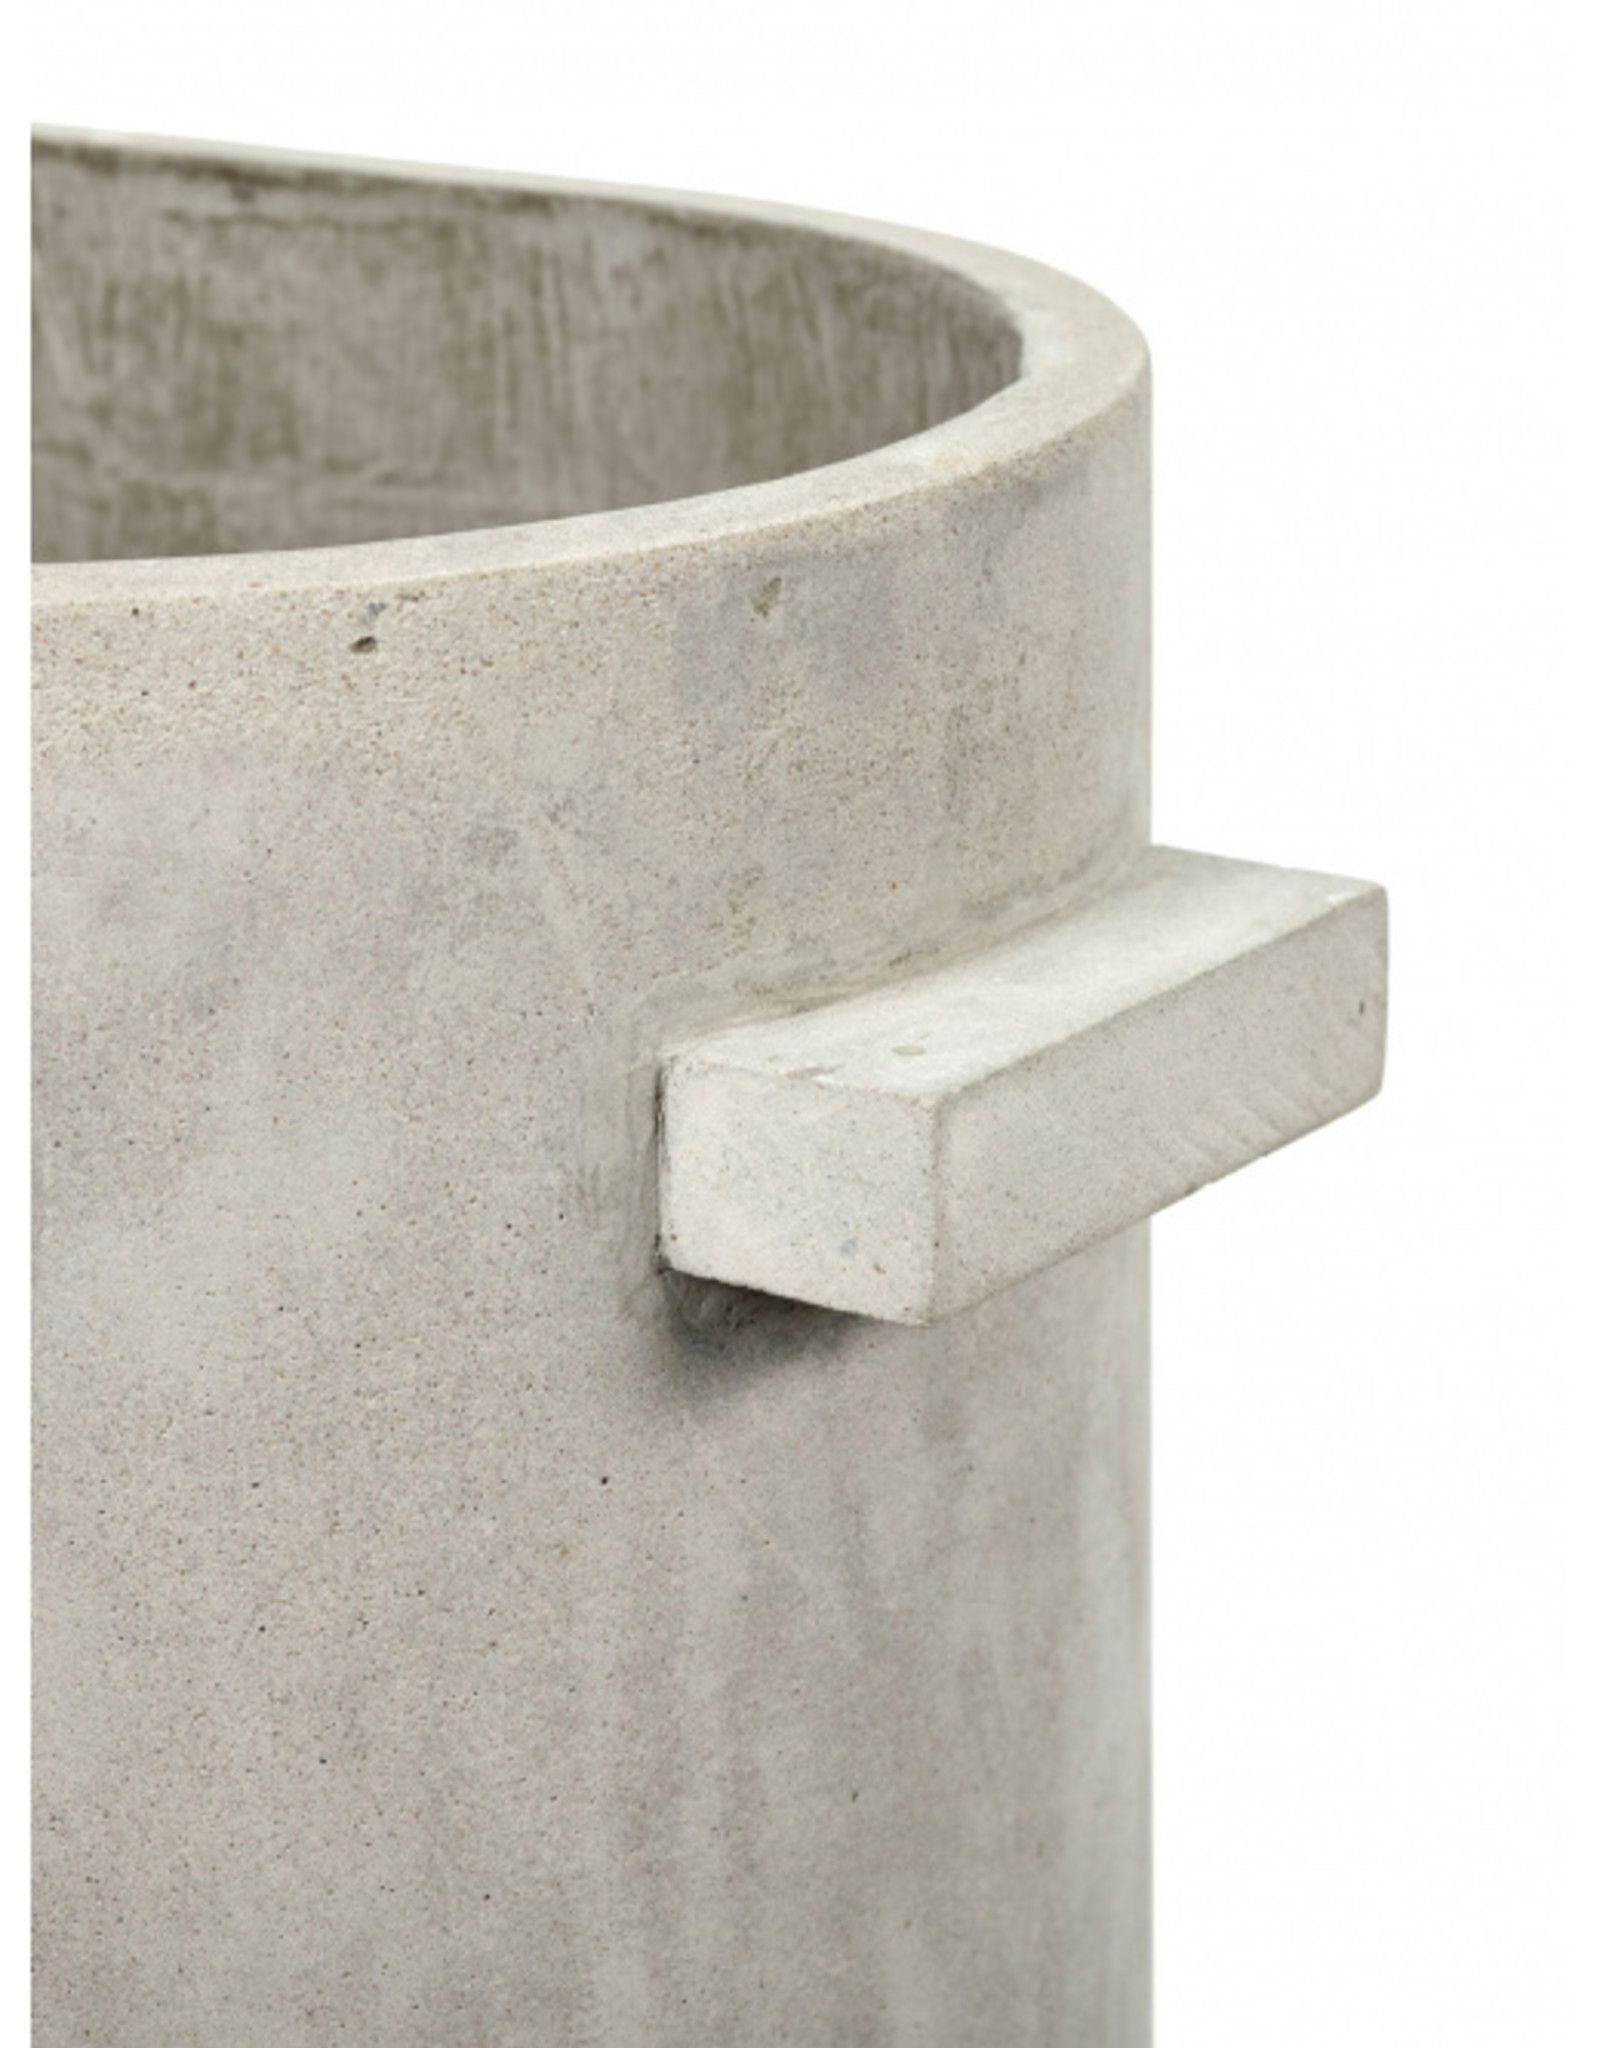 Serax Copy of Pot' Concrete' -  13 x 13 cm